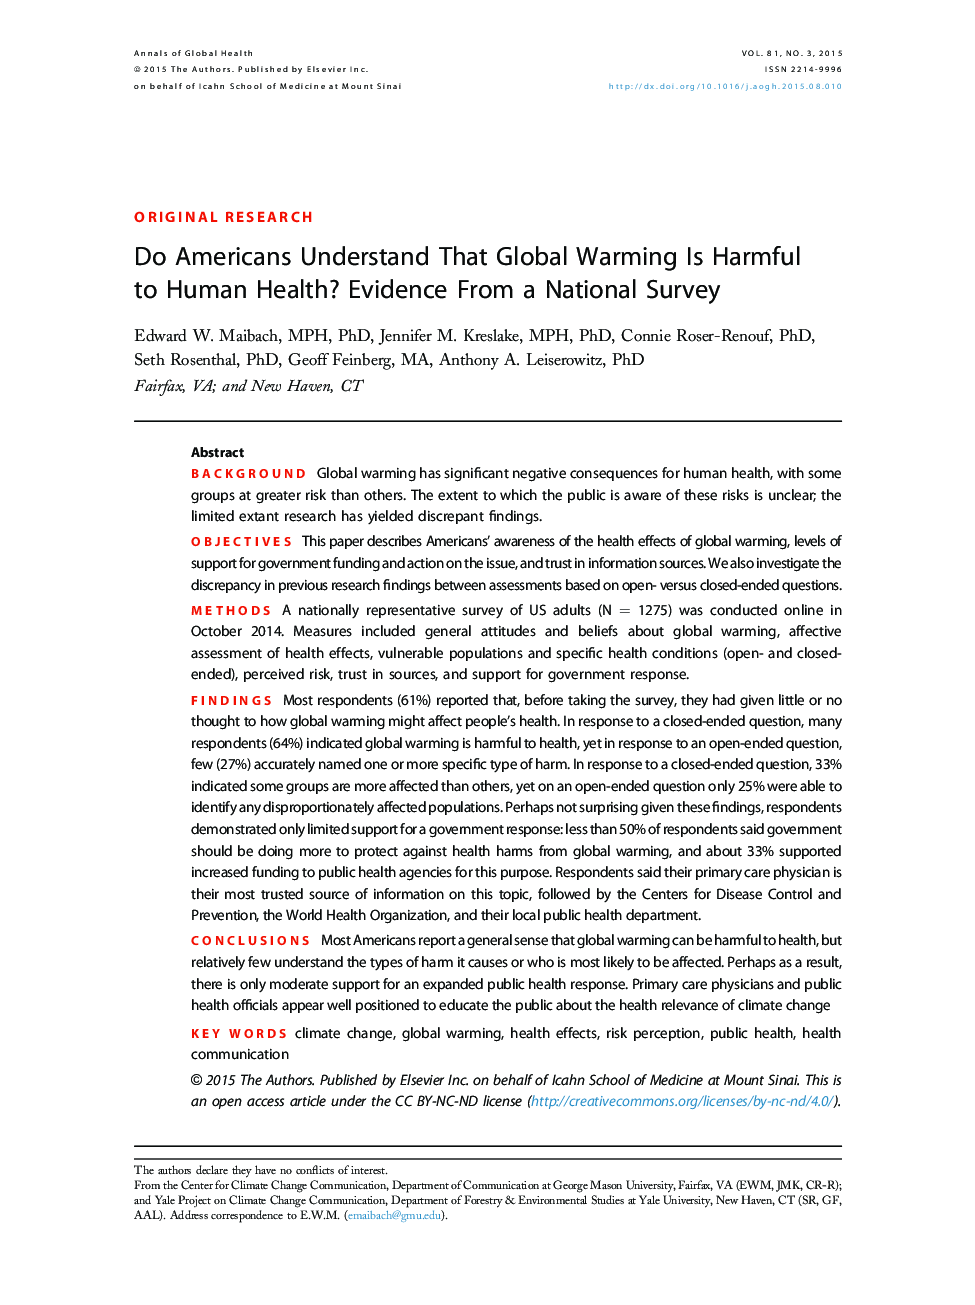 آیا آمریکایی ها درک می کنند که گرمایش جهانی برای سلامت انسان خطرناک است؟ شواهد از یک نظرسنجی ملی 